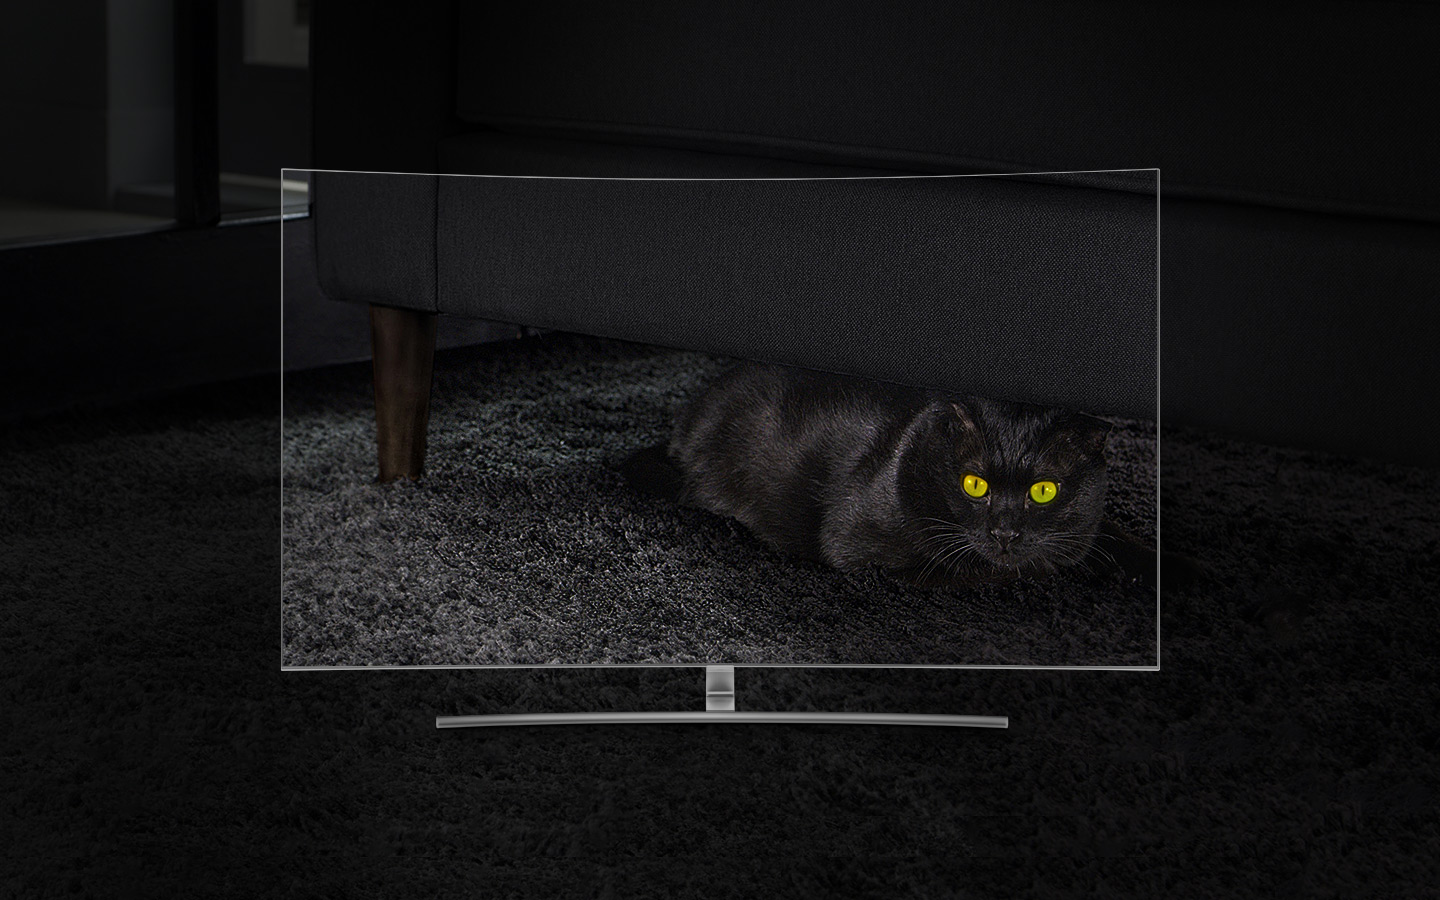 TV QLED Curva vista de frente e o ecrã mostra um gato preto escondido no escuro, debaixo do sofá numa sala de estar. Quanto mais nos aproximamos dos 1500 nits, melhor vemos o gato, apesar de ao início apenas conseguirmos distinguir os seus olhos.